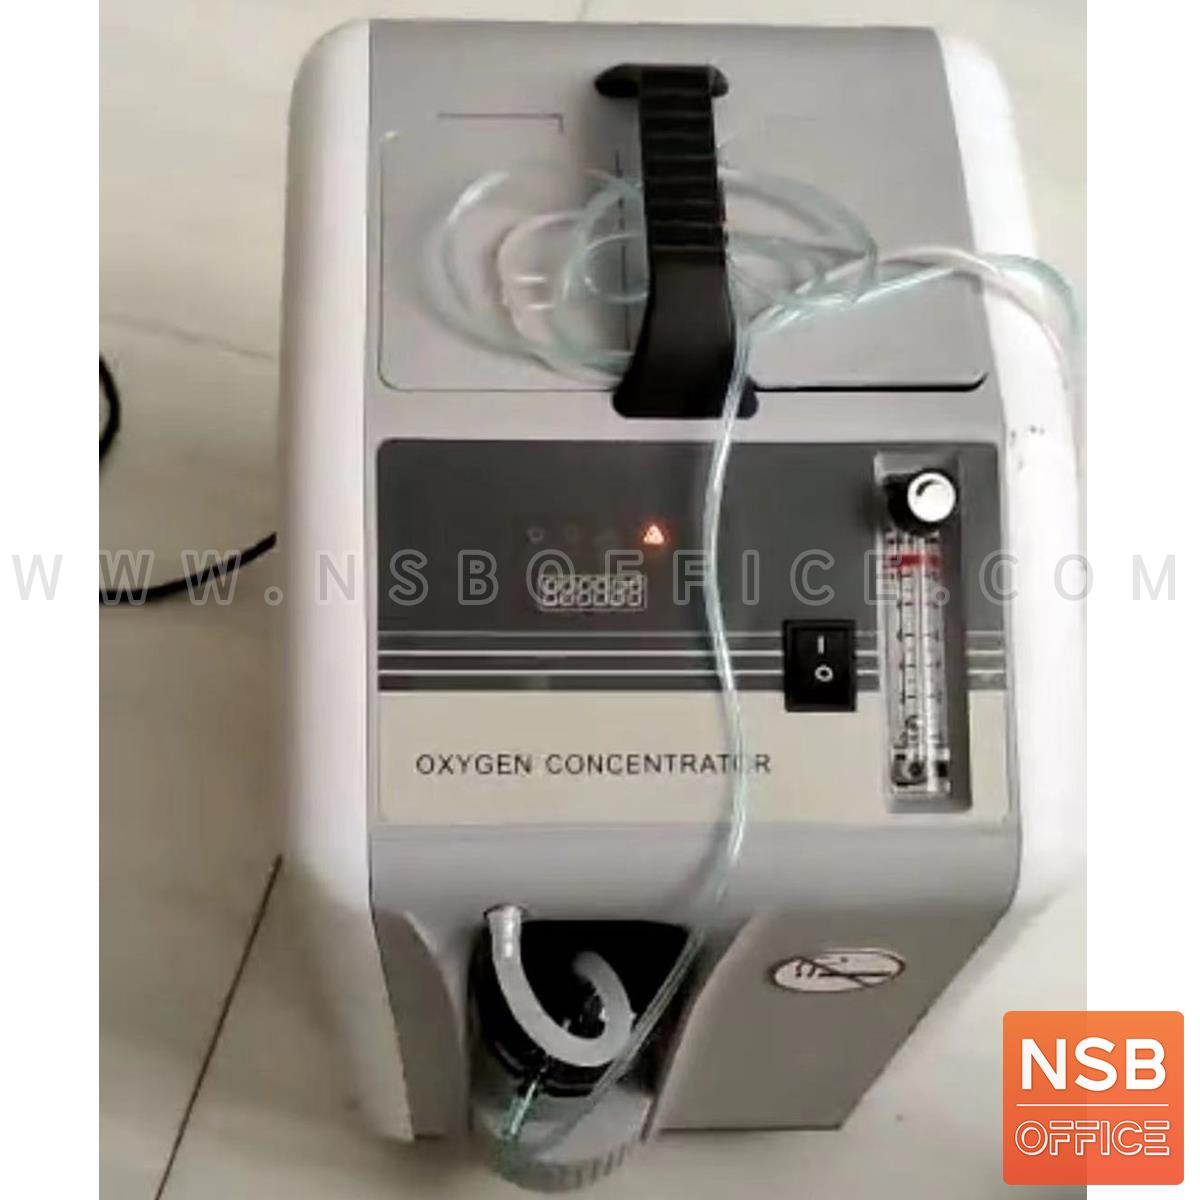 เครื่องผลิตออกซิเจน Portable Oxygen Concentrator ขนาด 10 ลิตร ล้อเลื่อน  